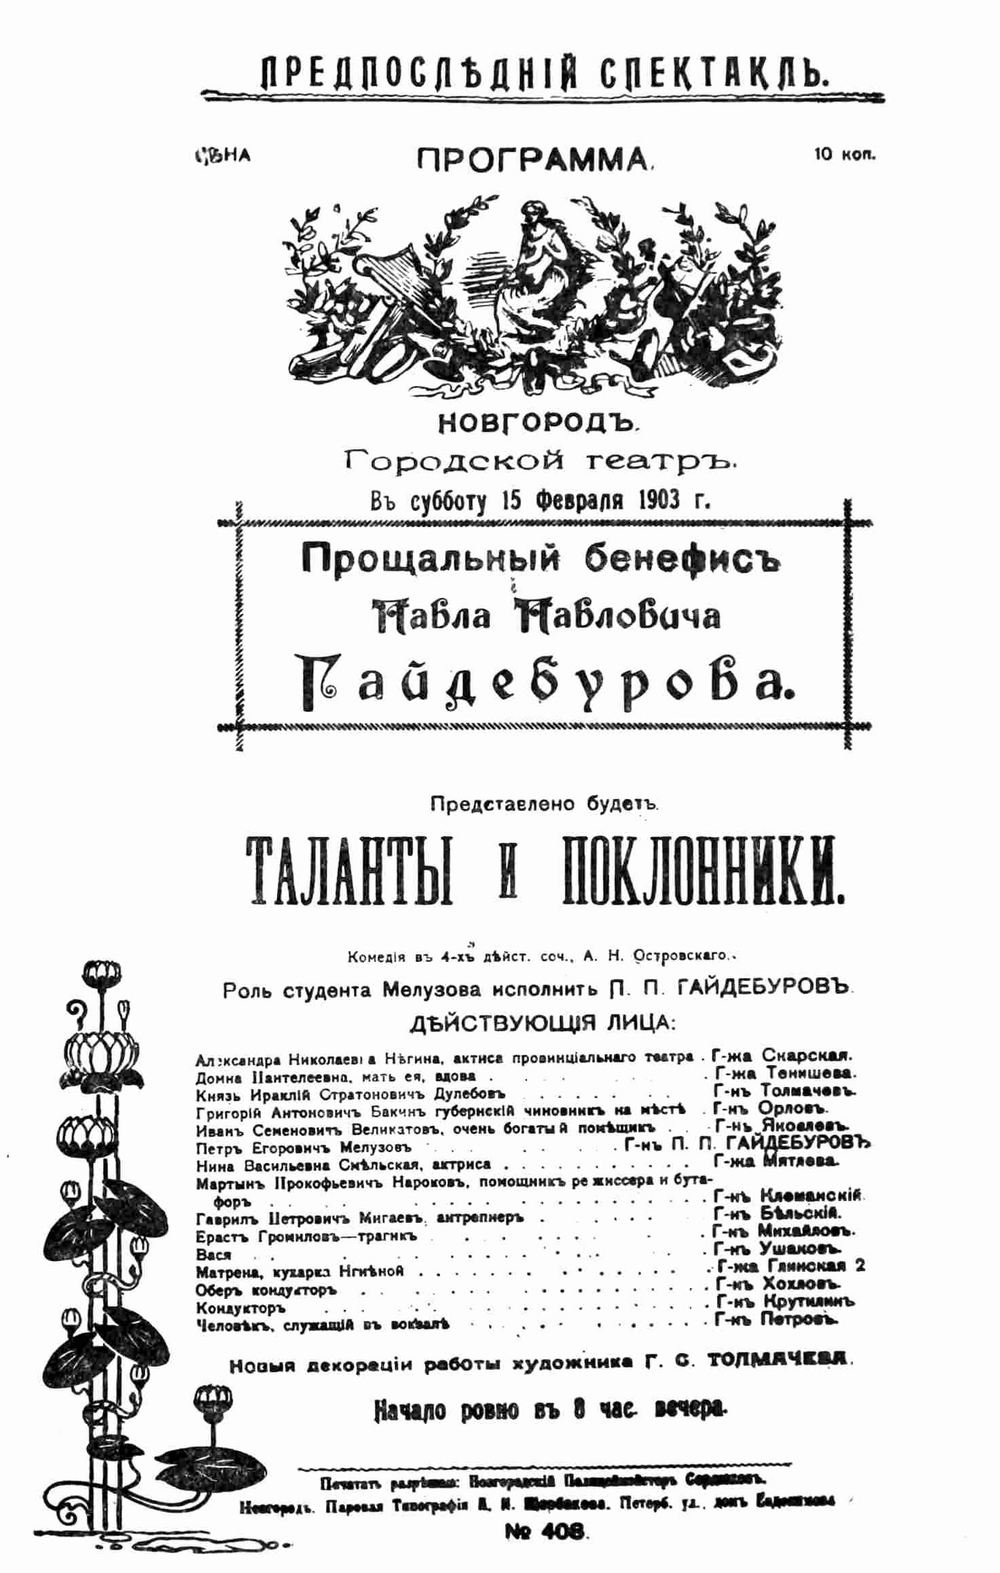 ПРограмма спектакля Таланты и поклонник в Новгороде 1903